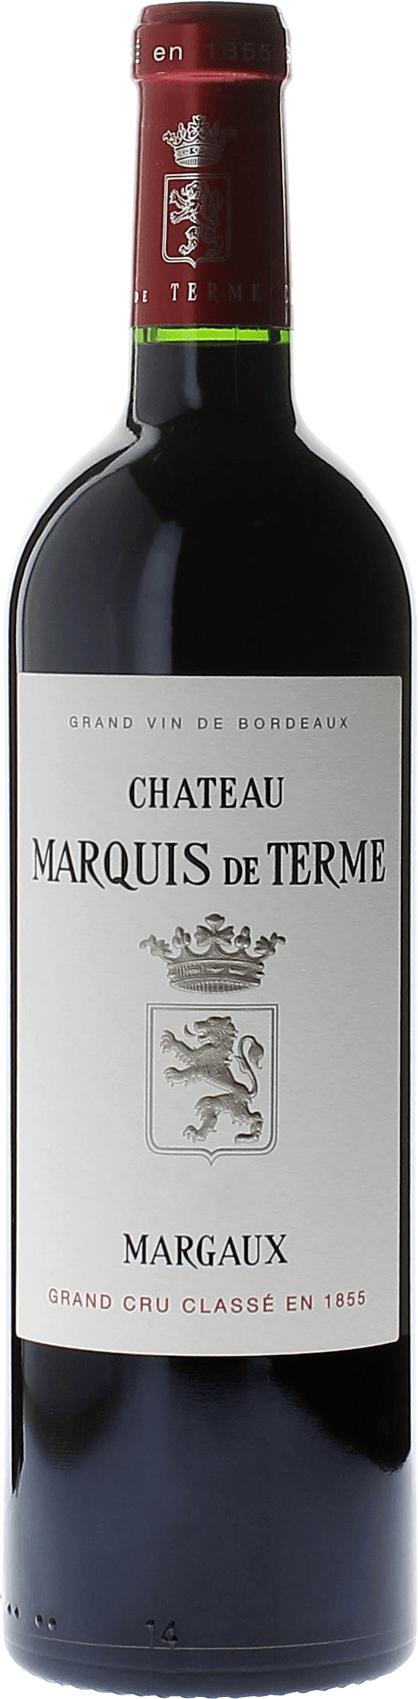 Marquis de terme 1992 4me Grand cru class Margaux, Bordeaux rouge